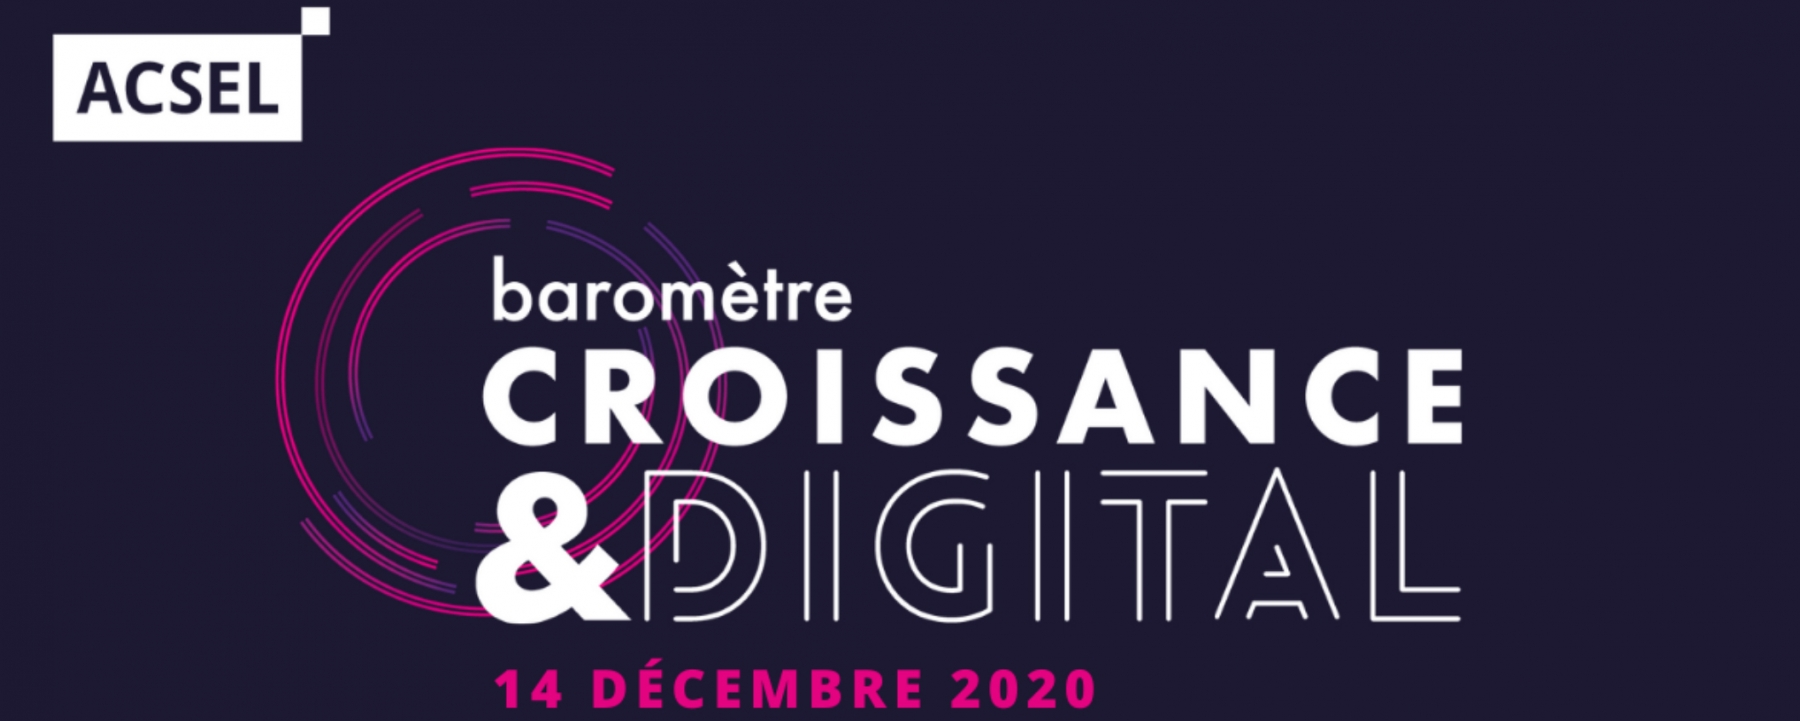 Baromètre Croissance & digital, organisé par ACSEL le 14 décembre 2020